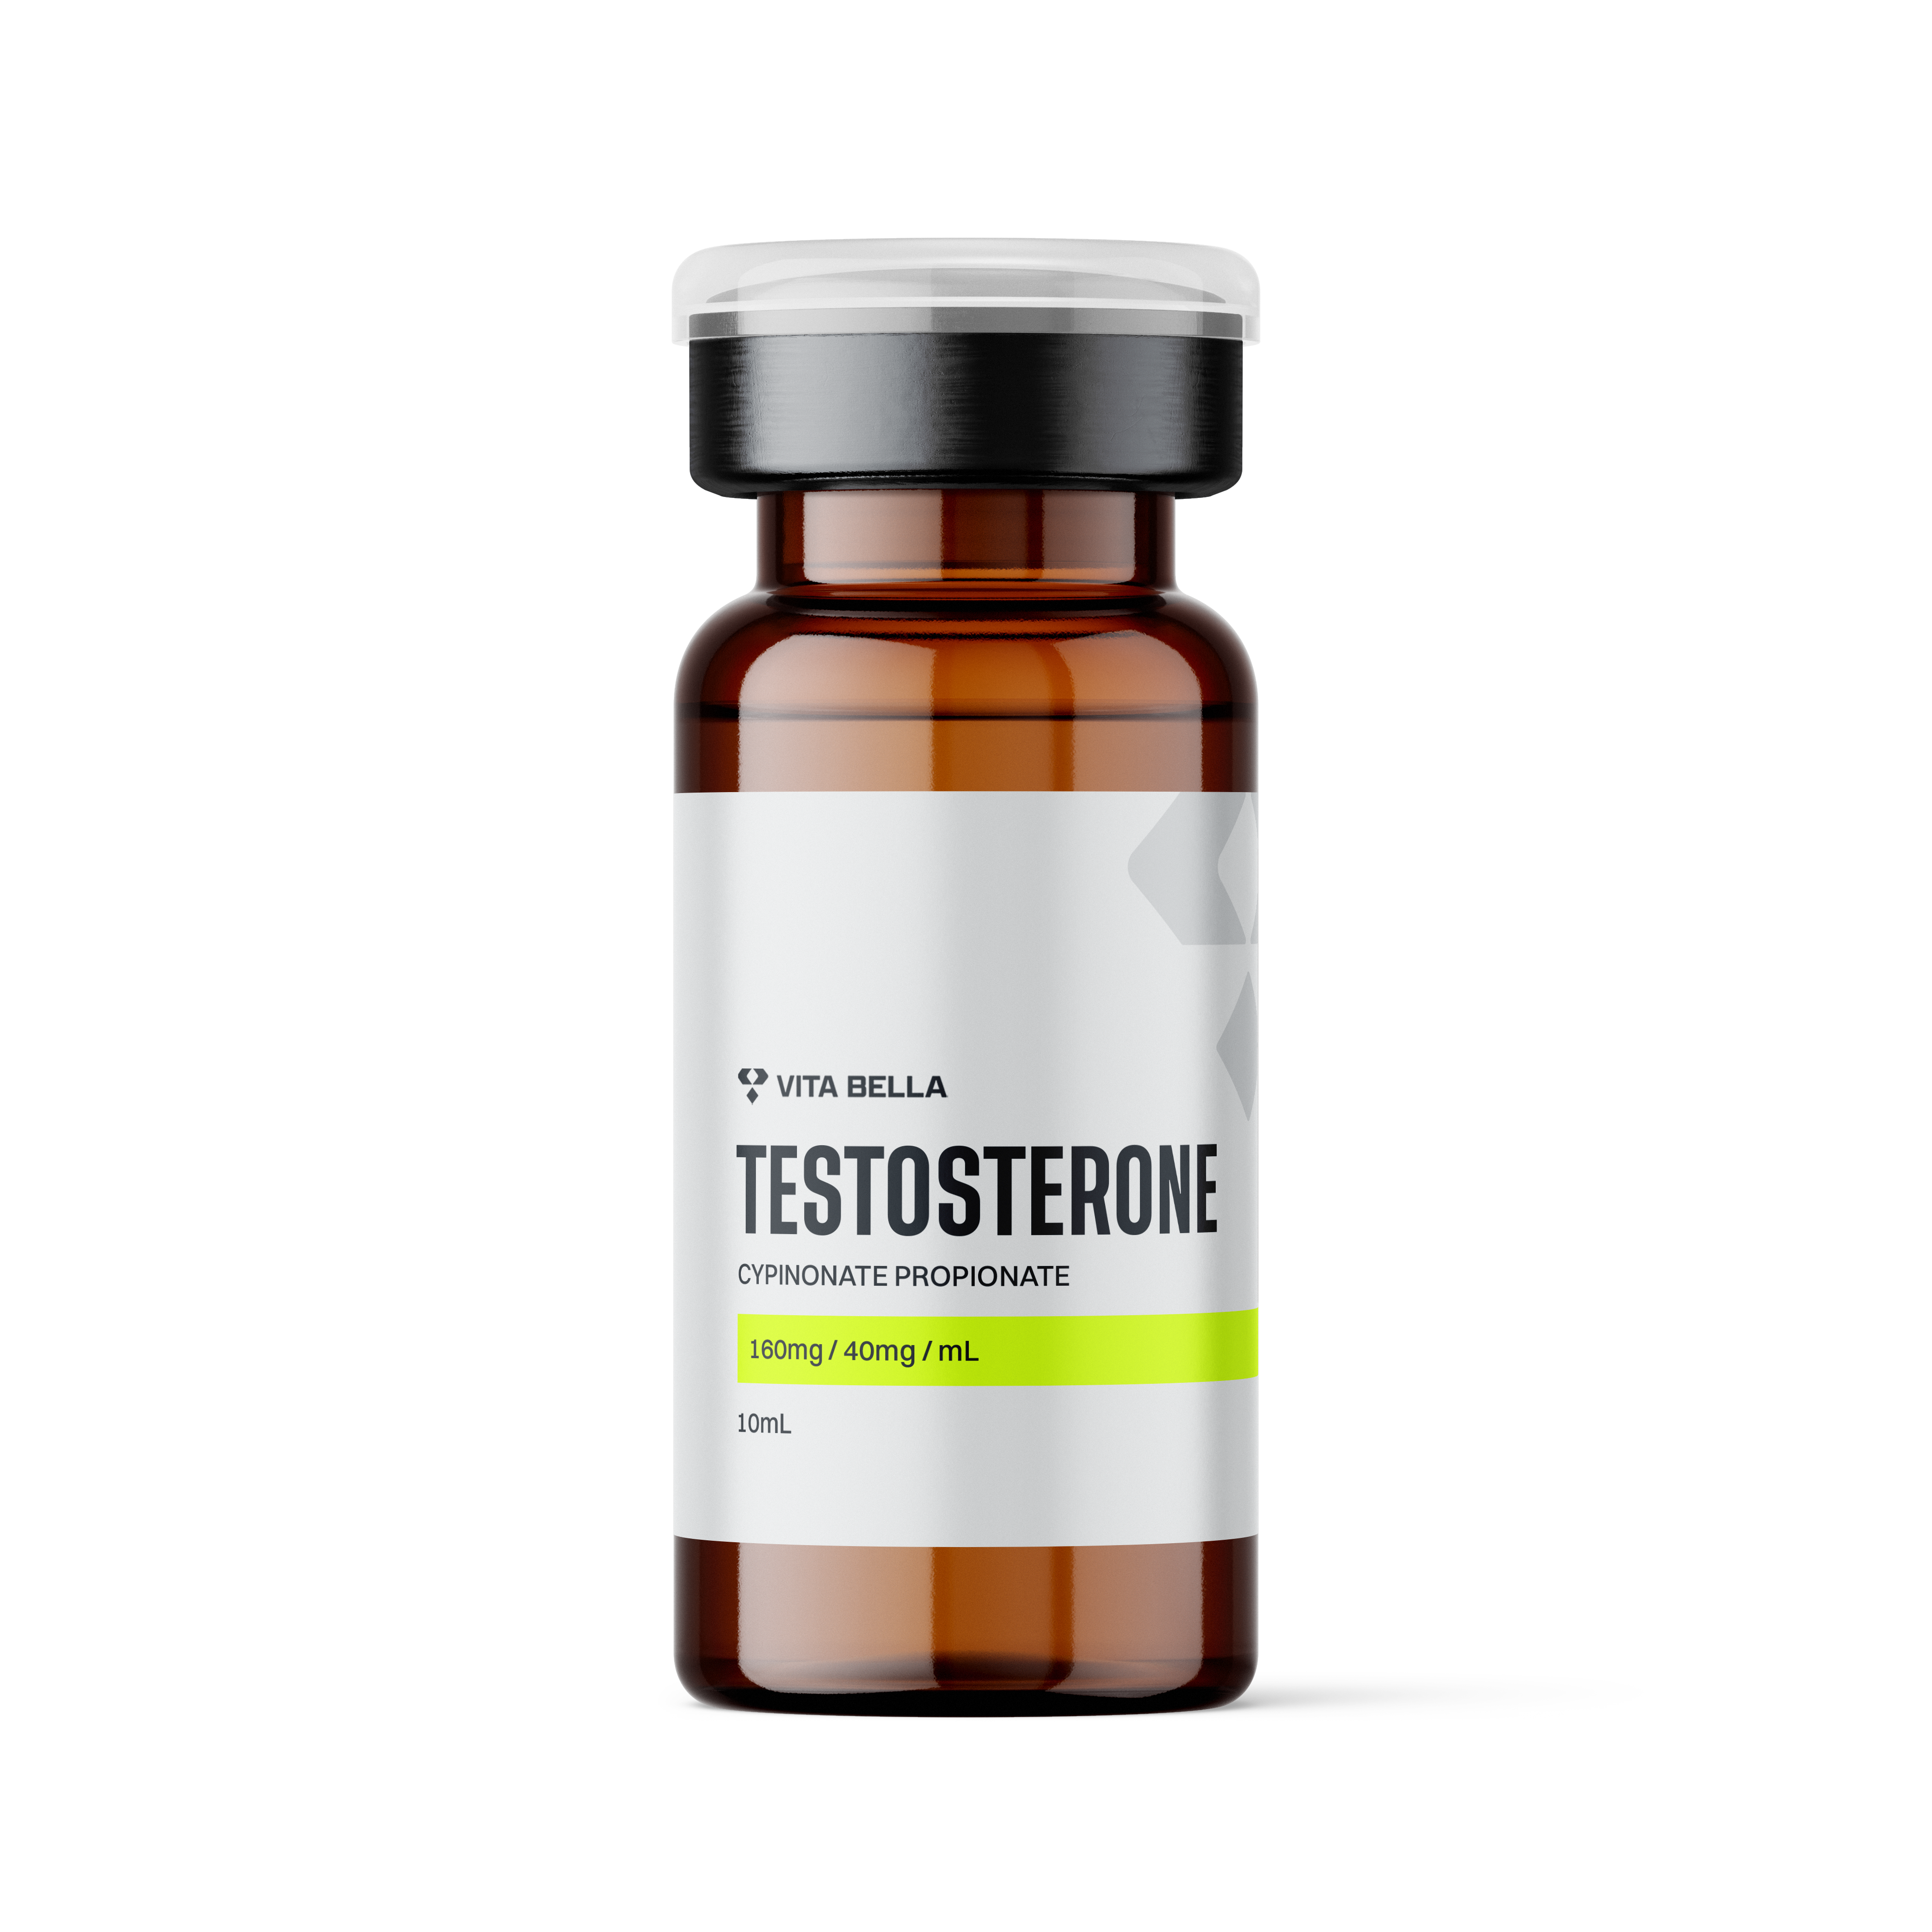 Testosterone, Cypinonate propionate